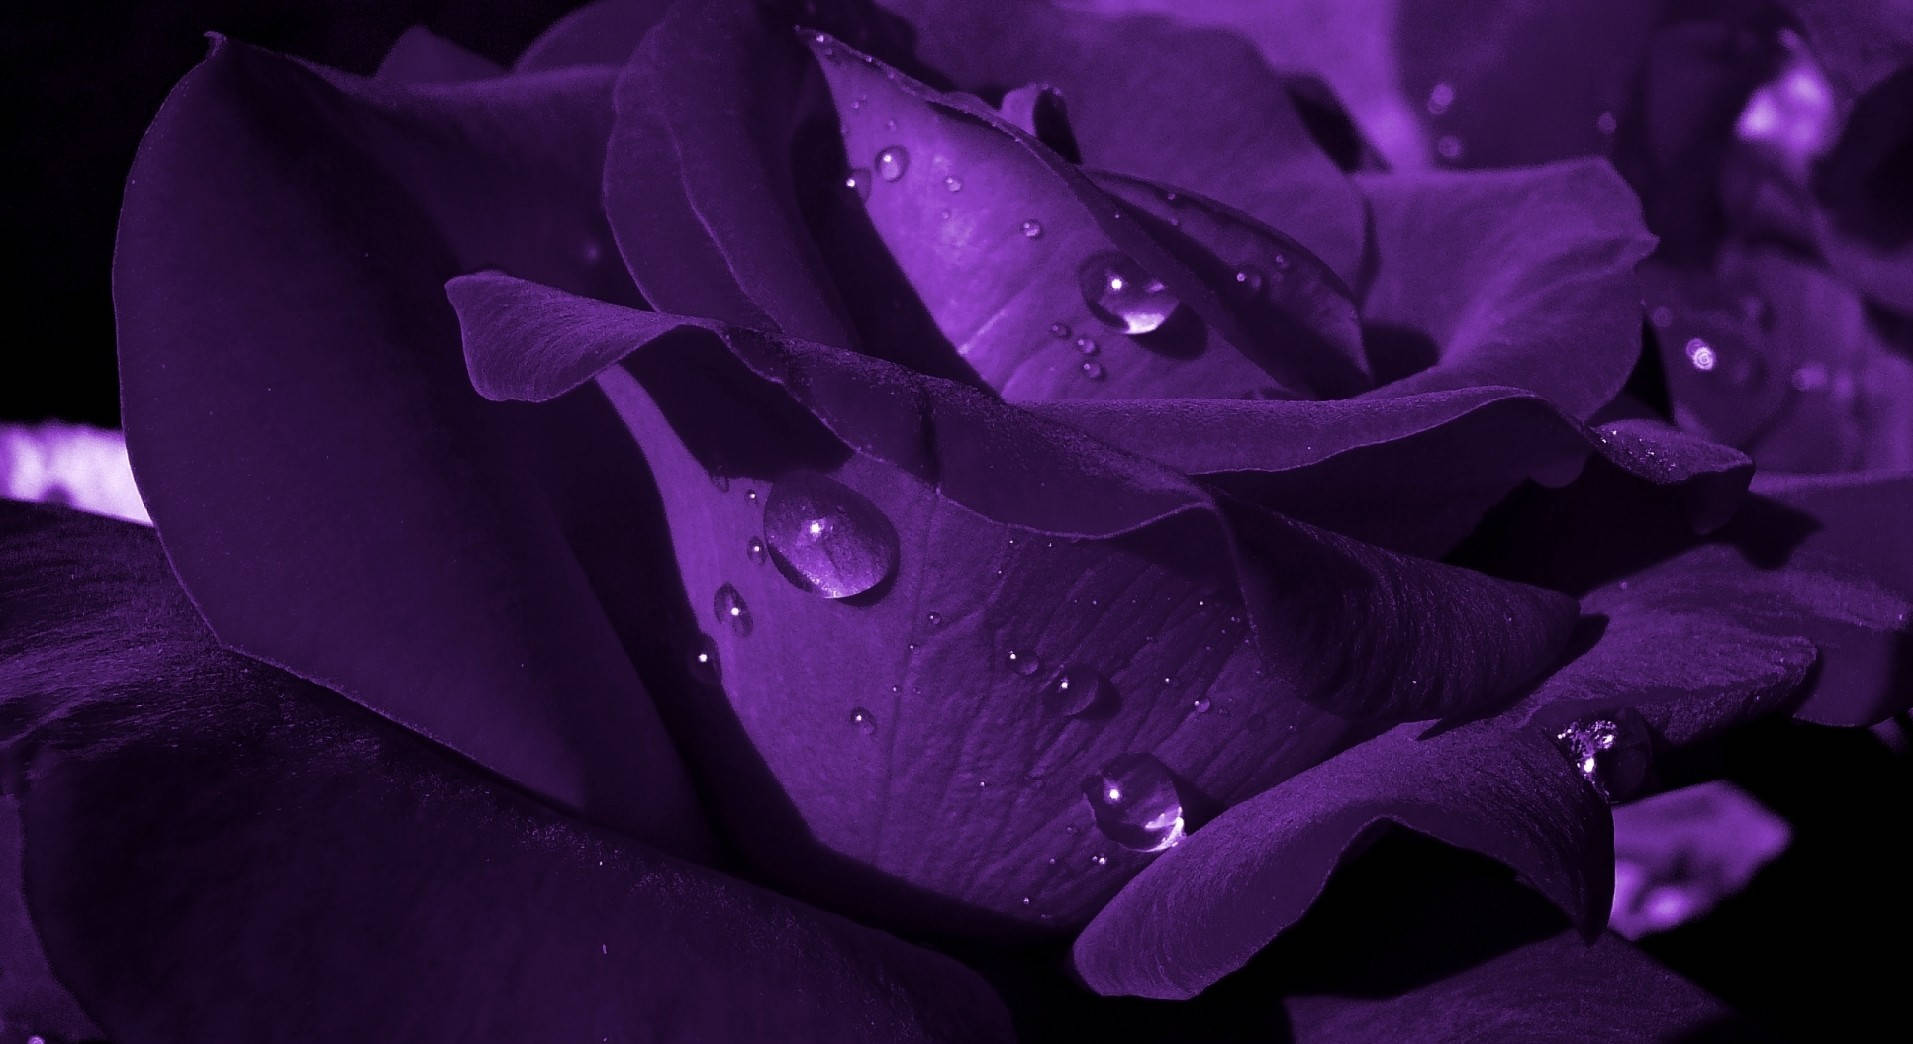 Purple Fractal Flower Black Background HD Purple Wallpapers  HD Wallpapers   ID 75260